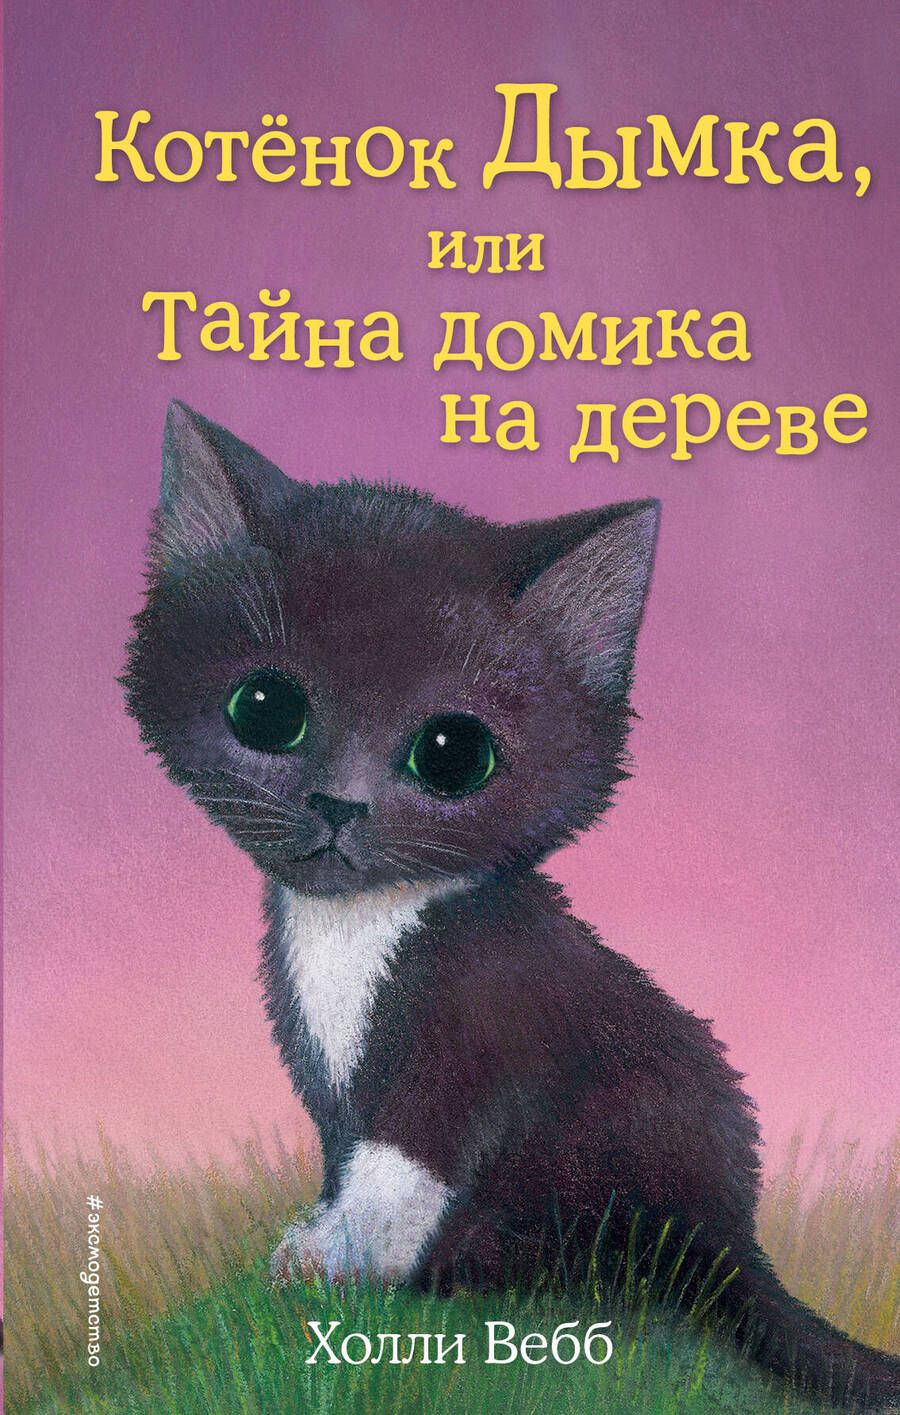 Обложка книги "Холли Вебб: Котёнок Дымка, или Тайна домика на дереве: повесть"